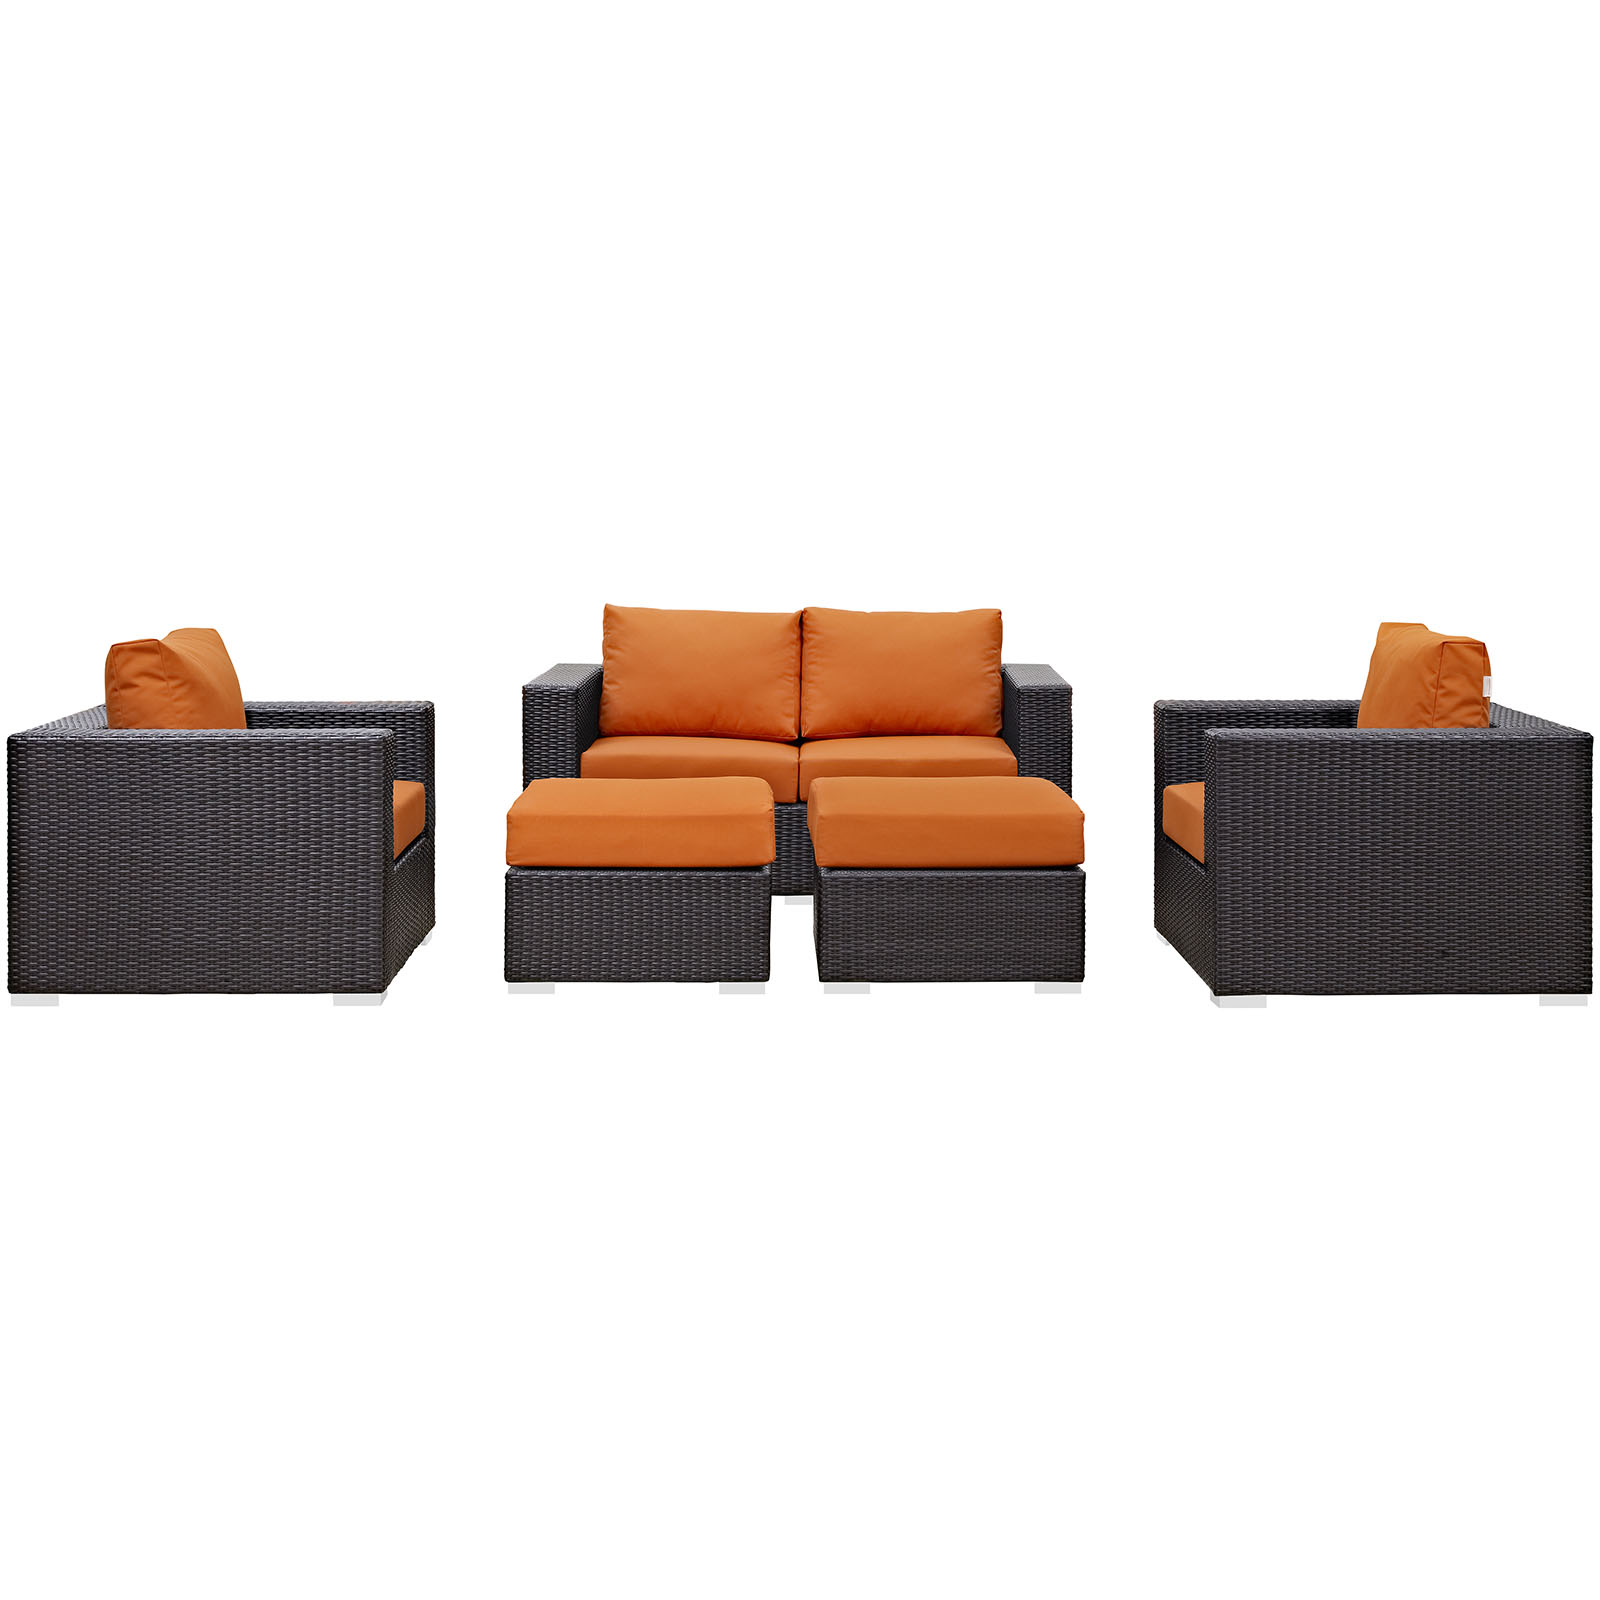 Modway Convene 5 Piece Outdoor Patio Sofa Set in Espresso Orange - image 4 of 7